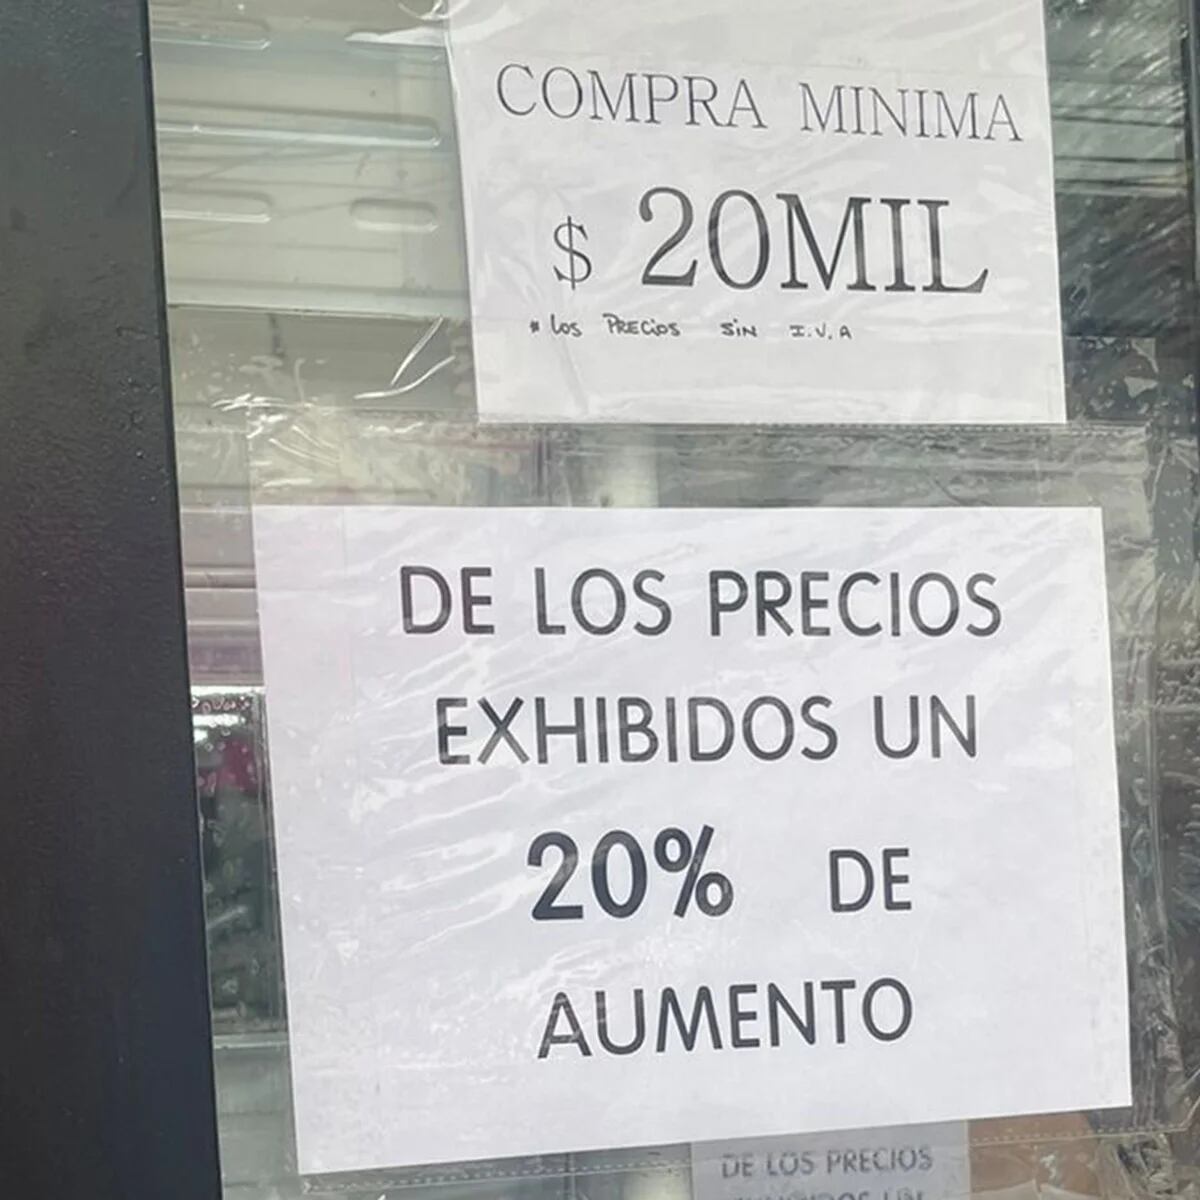 Debido a la crisis, sube el precio de las entradas en San Martín